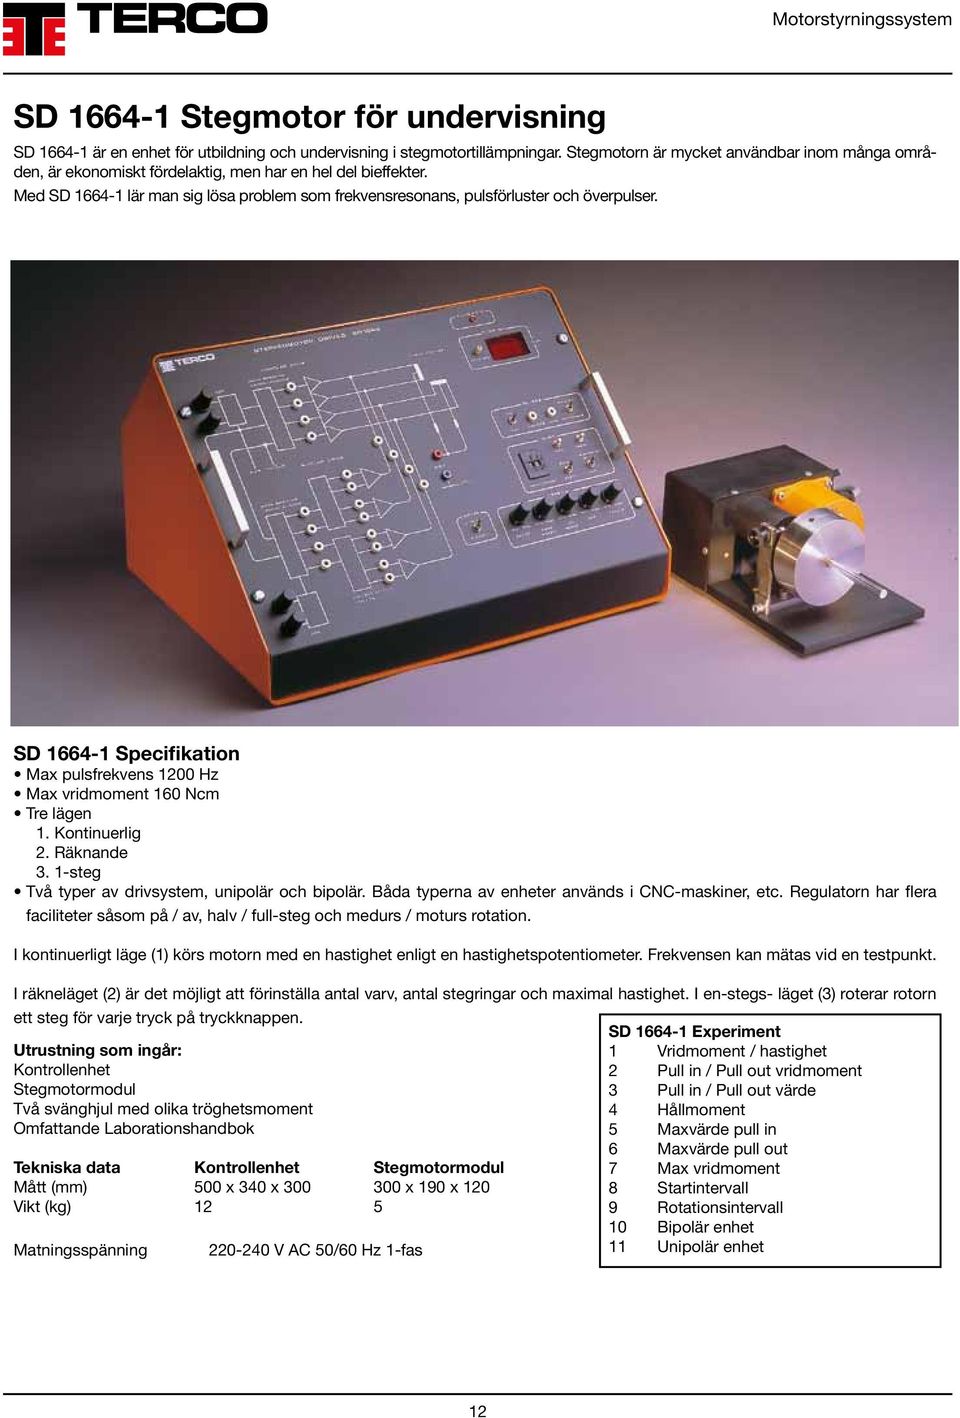 SD 1664-1 Specifikation Max pulsfrekvens 1200 Hz Max vridmoment 160 Ncm Tre lägen 1. Kontinuerlig 2. Räknande 3. 1-steg Två typer av drivsystem, unipolär och bipolär.